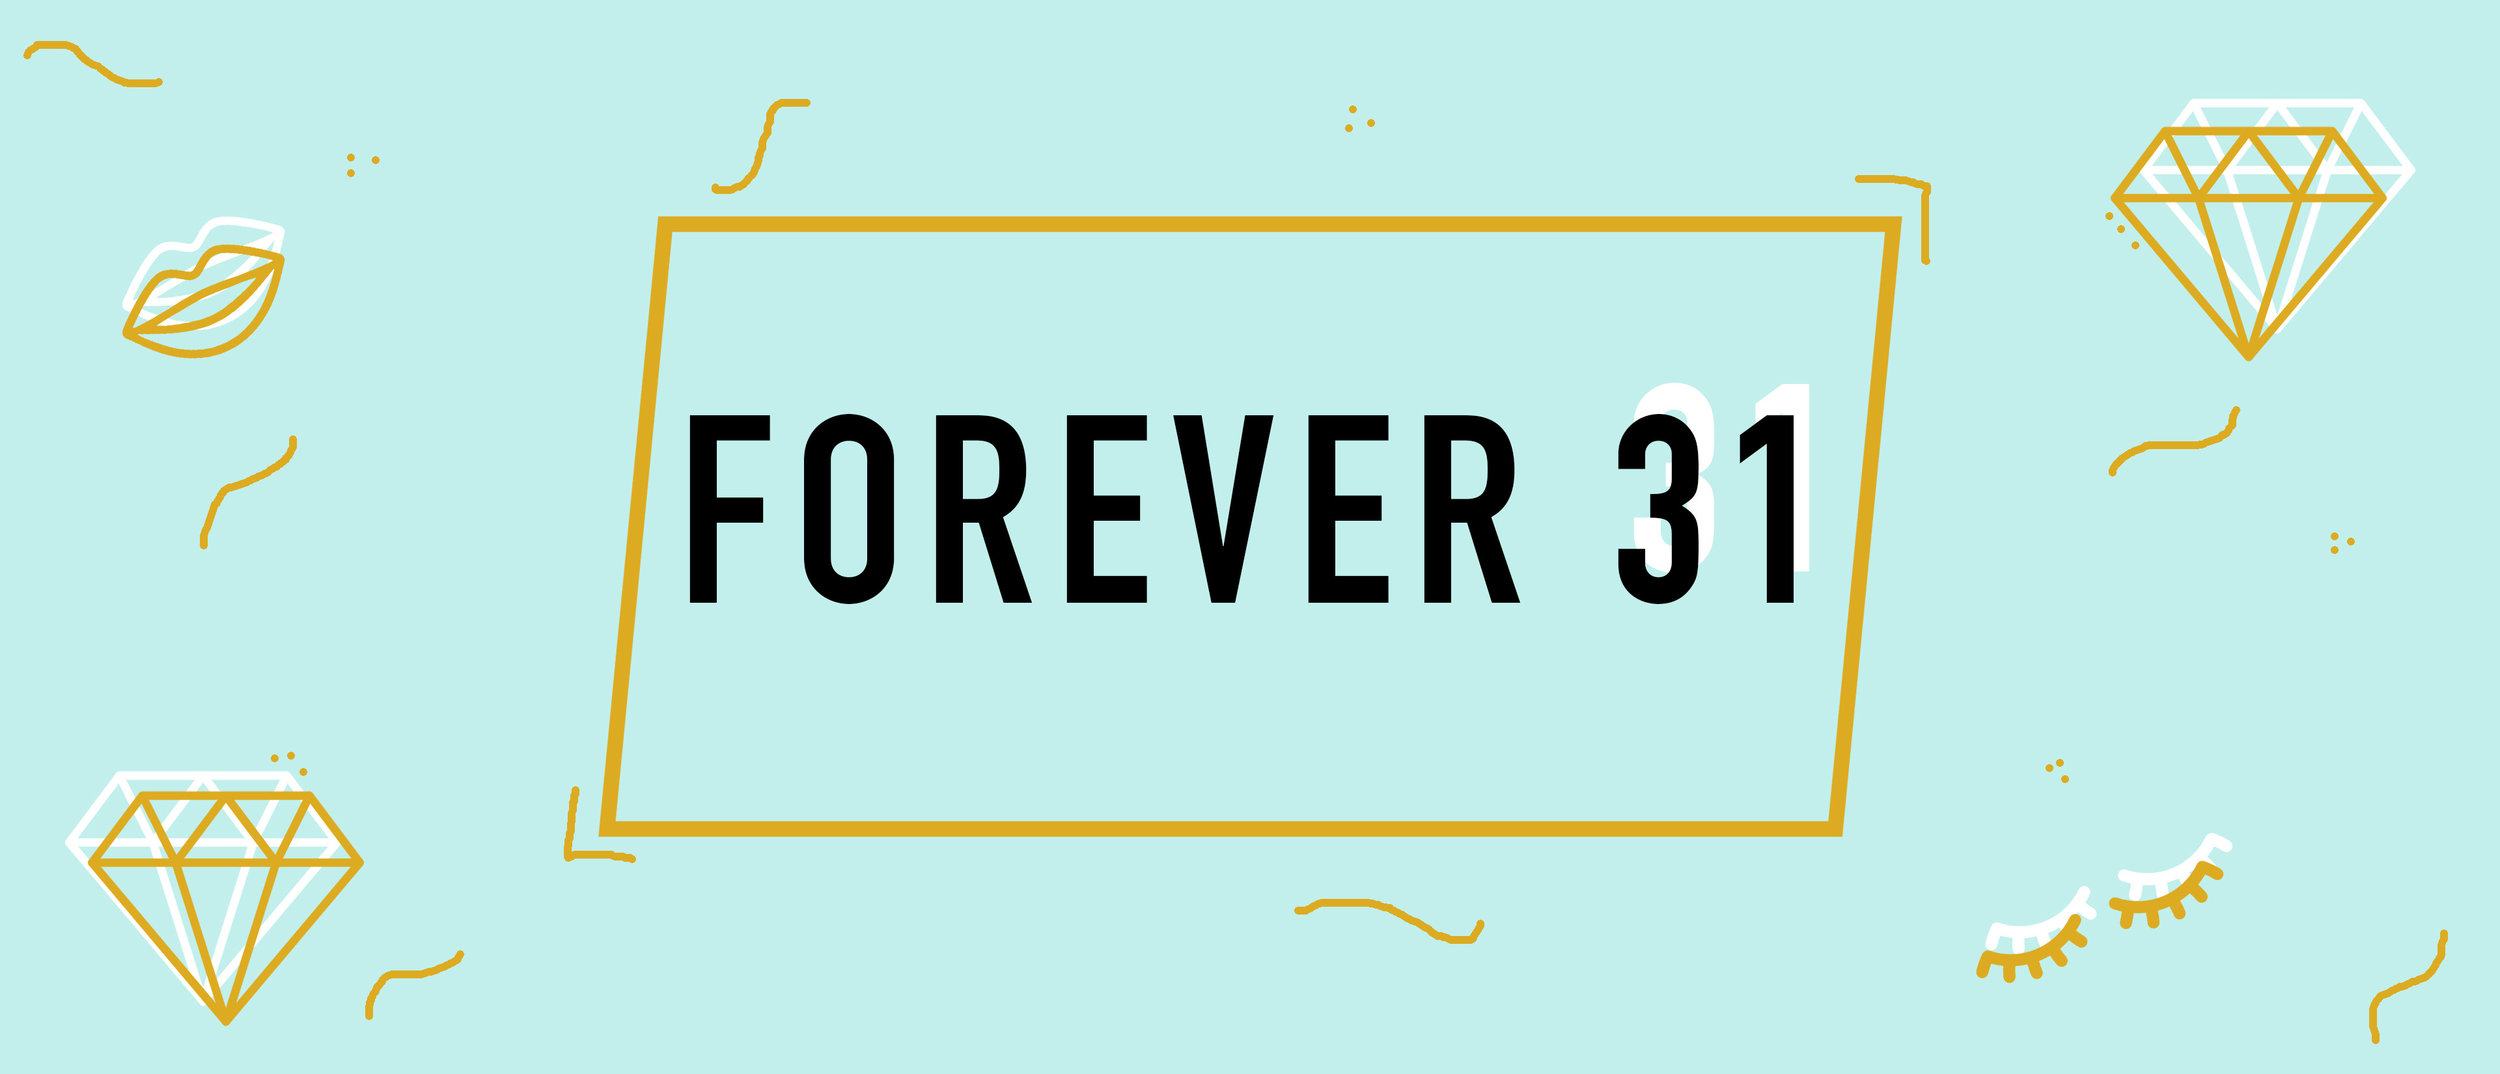 Forever 21 Title.jpg